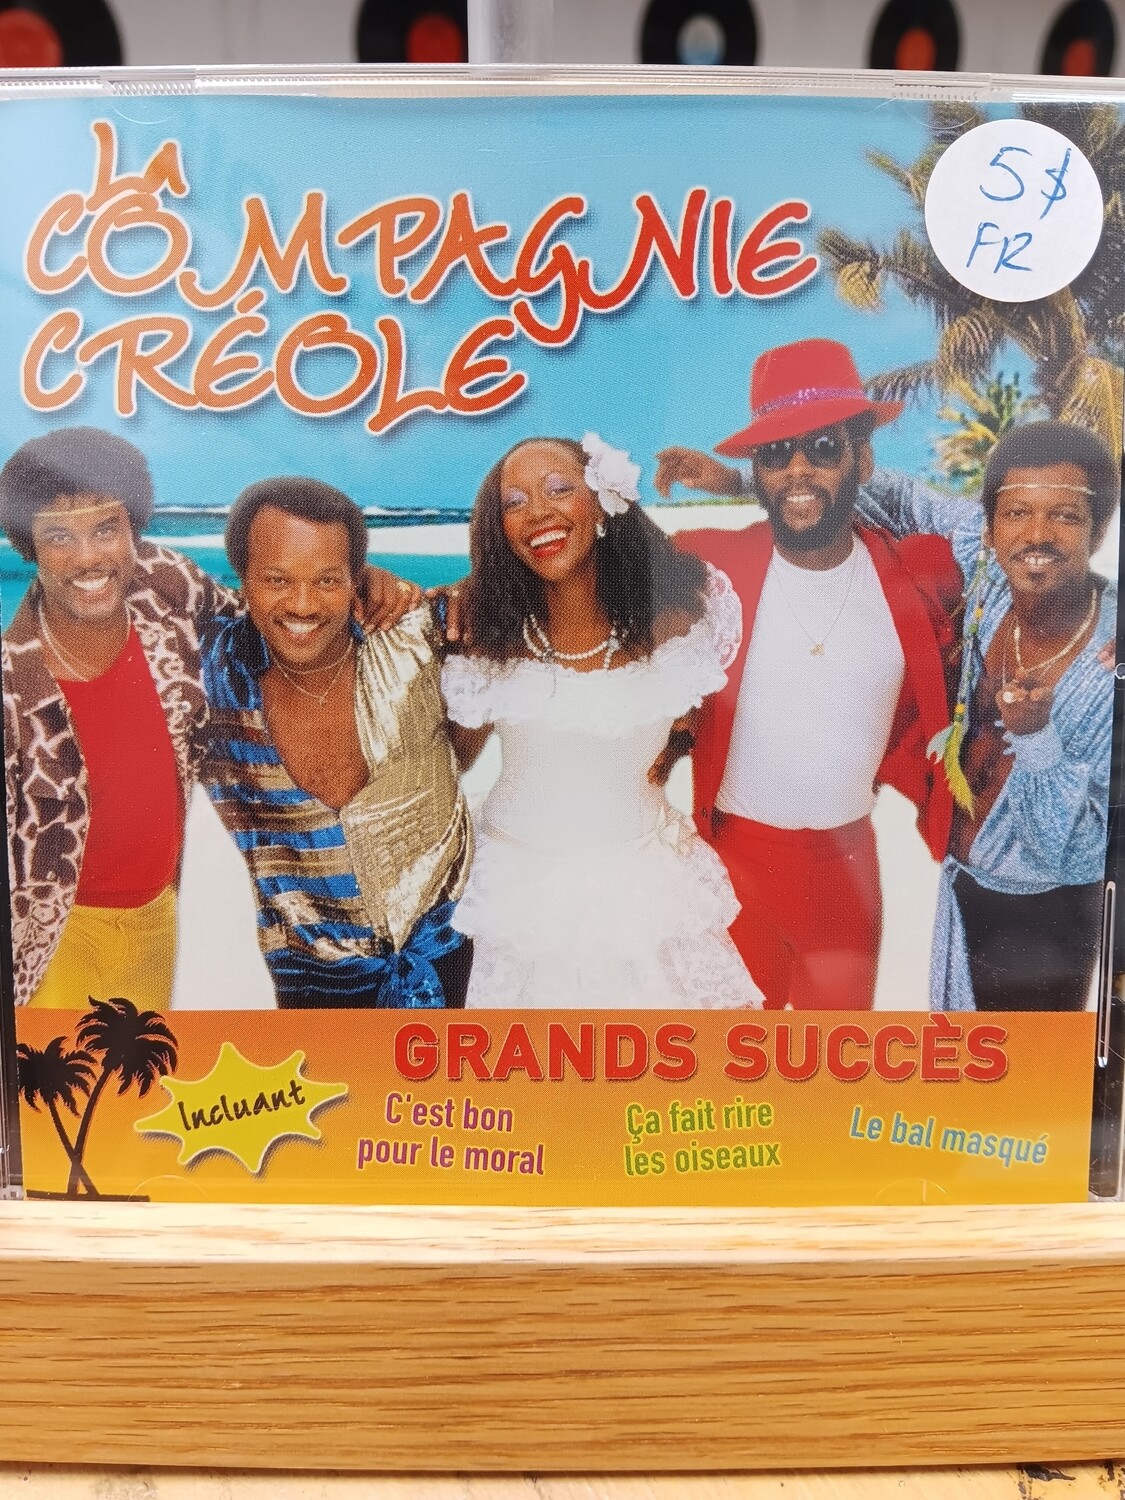 La compagnie créole - Grands succès (CD)